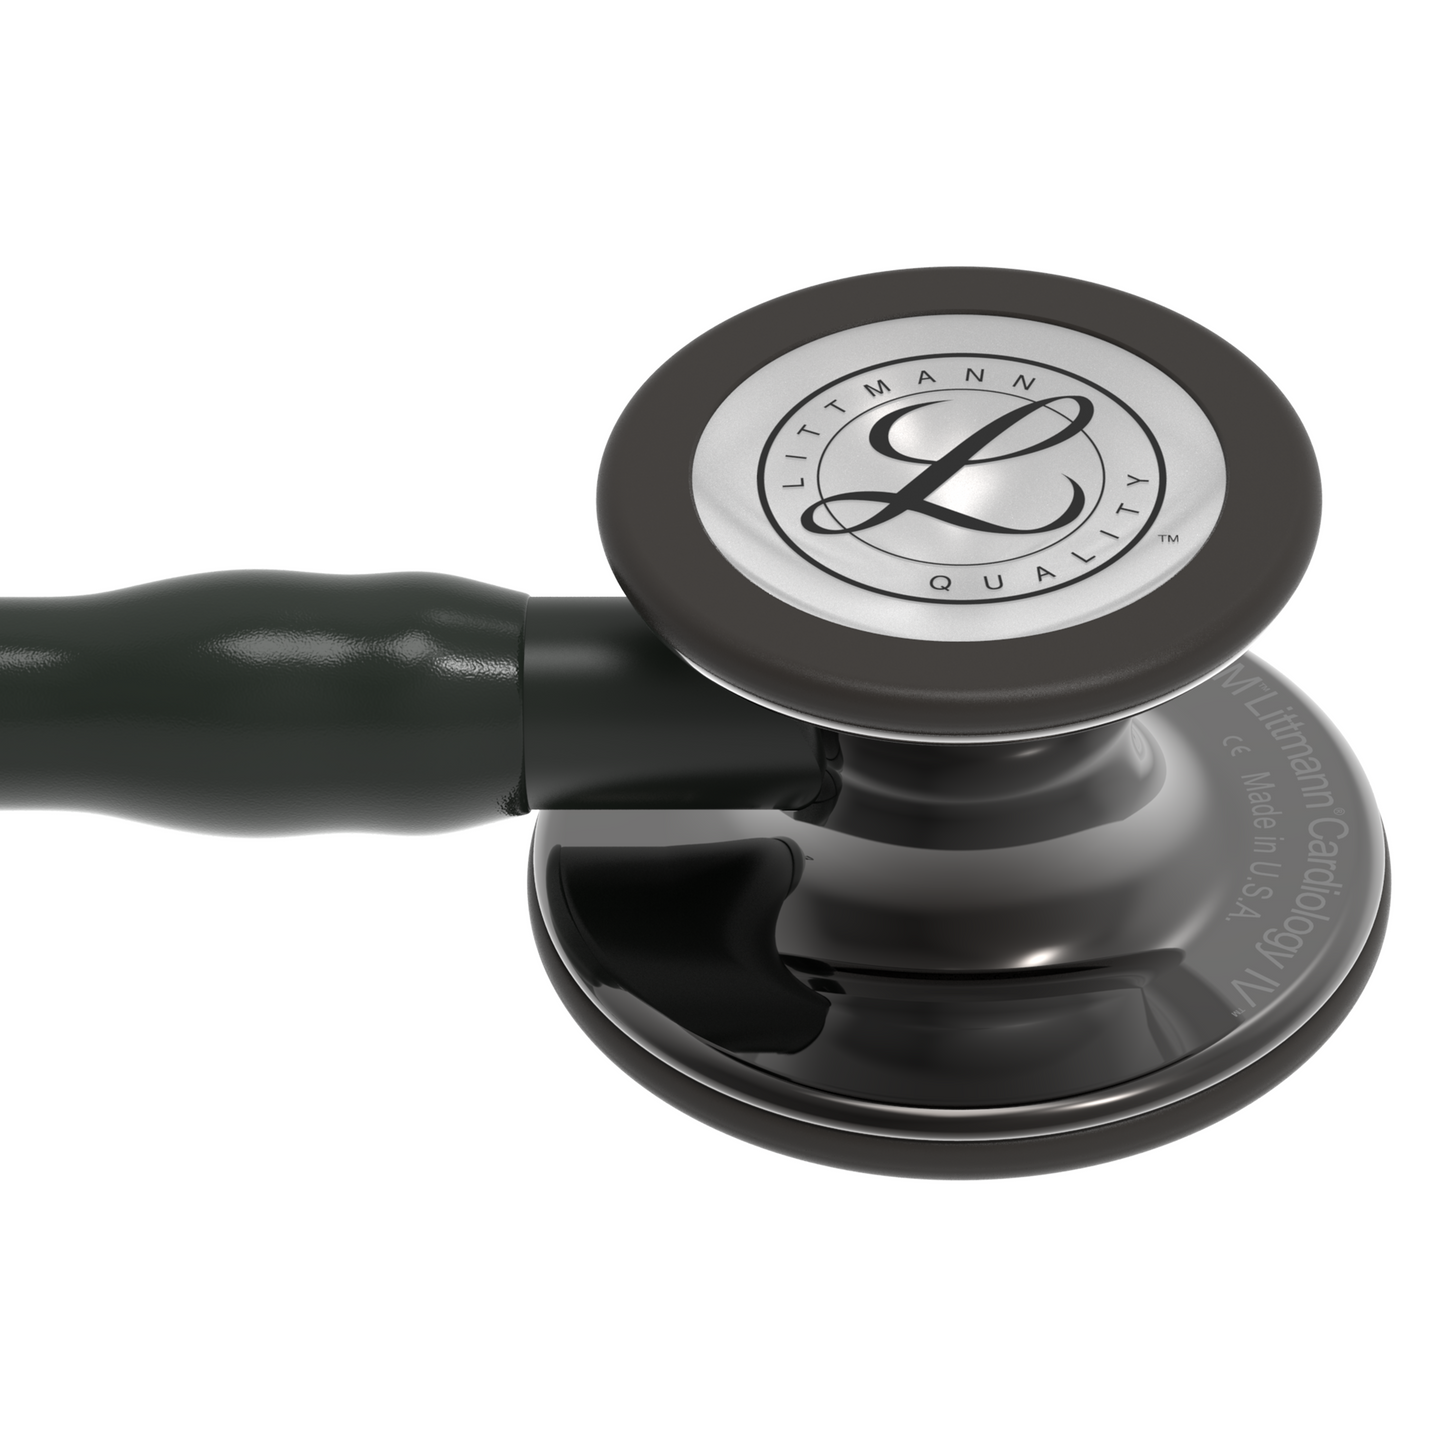 3M™ Littmann® Cardiology IV™, campana de acabado de alto brillo gris humo, tubo negro y vástago y auricular color negro 6232